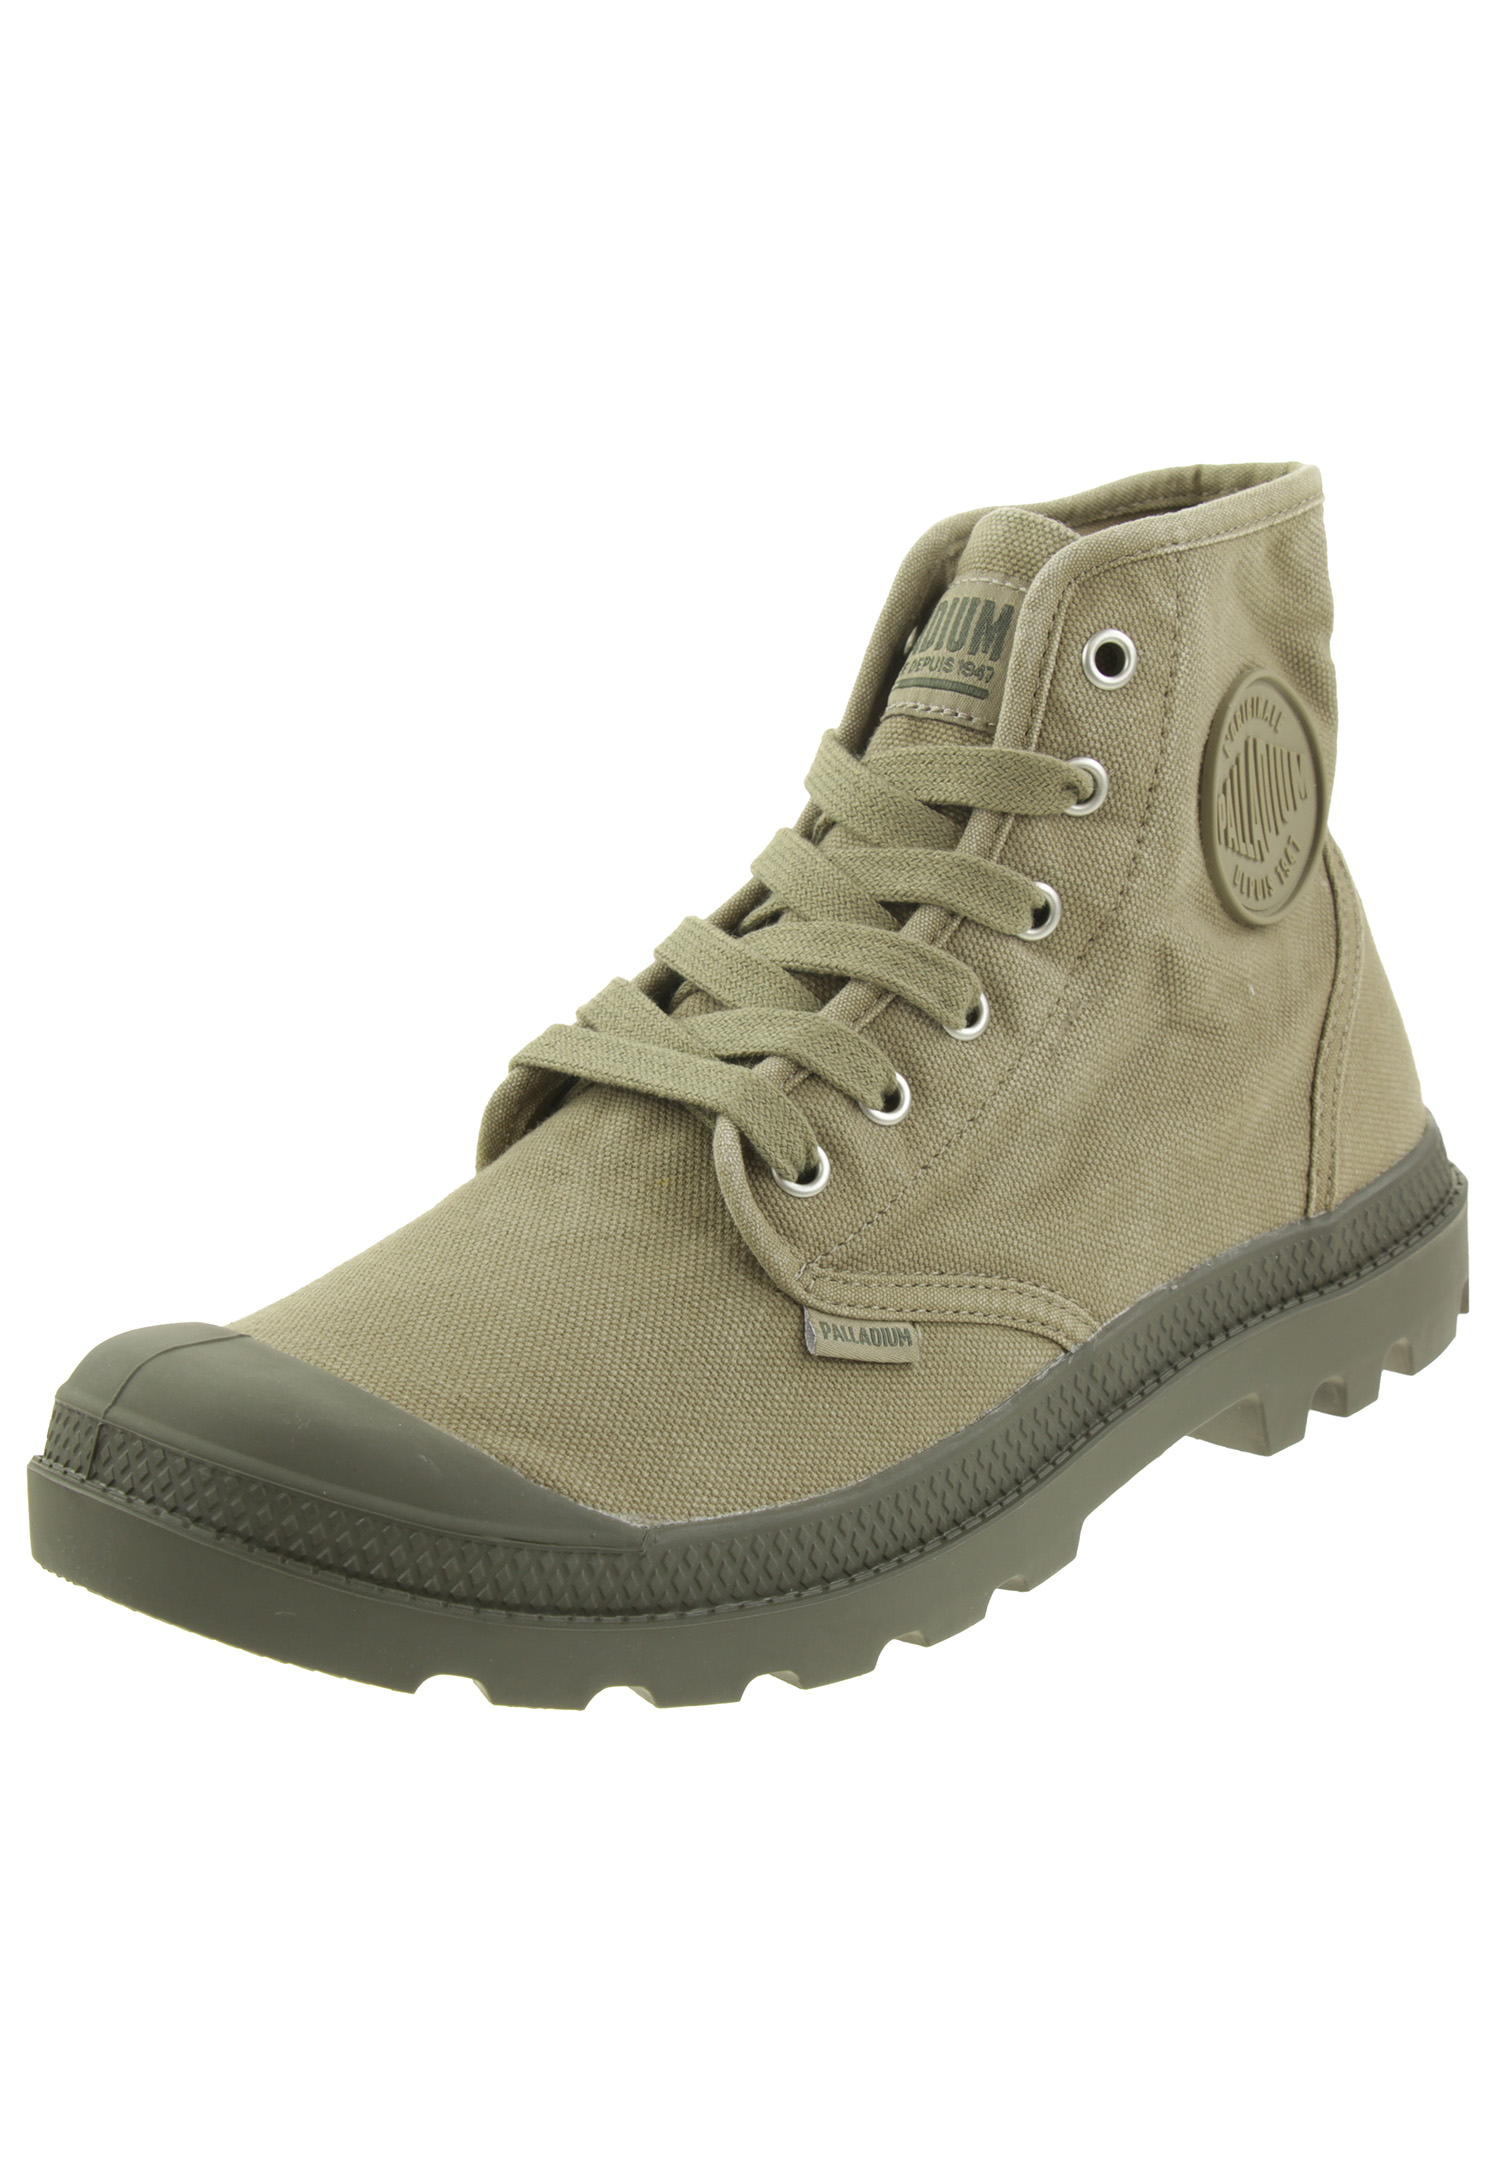 Palladium Herren US Pampa Hi H Boots Stiefelette 02352 grün, Schuhgröße:44 EU